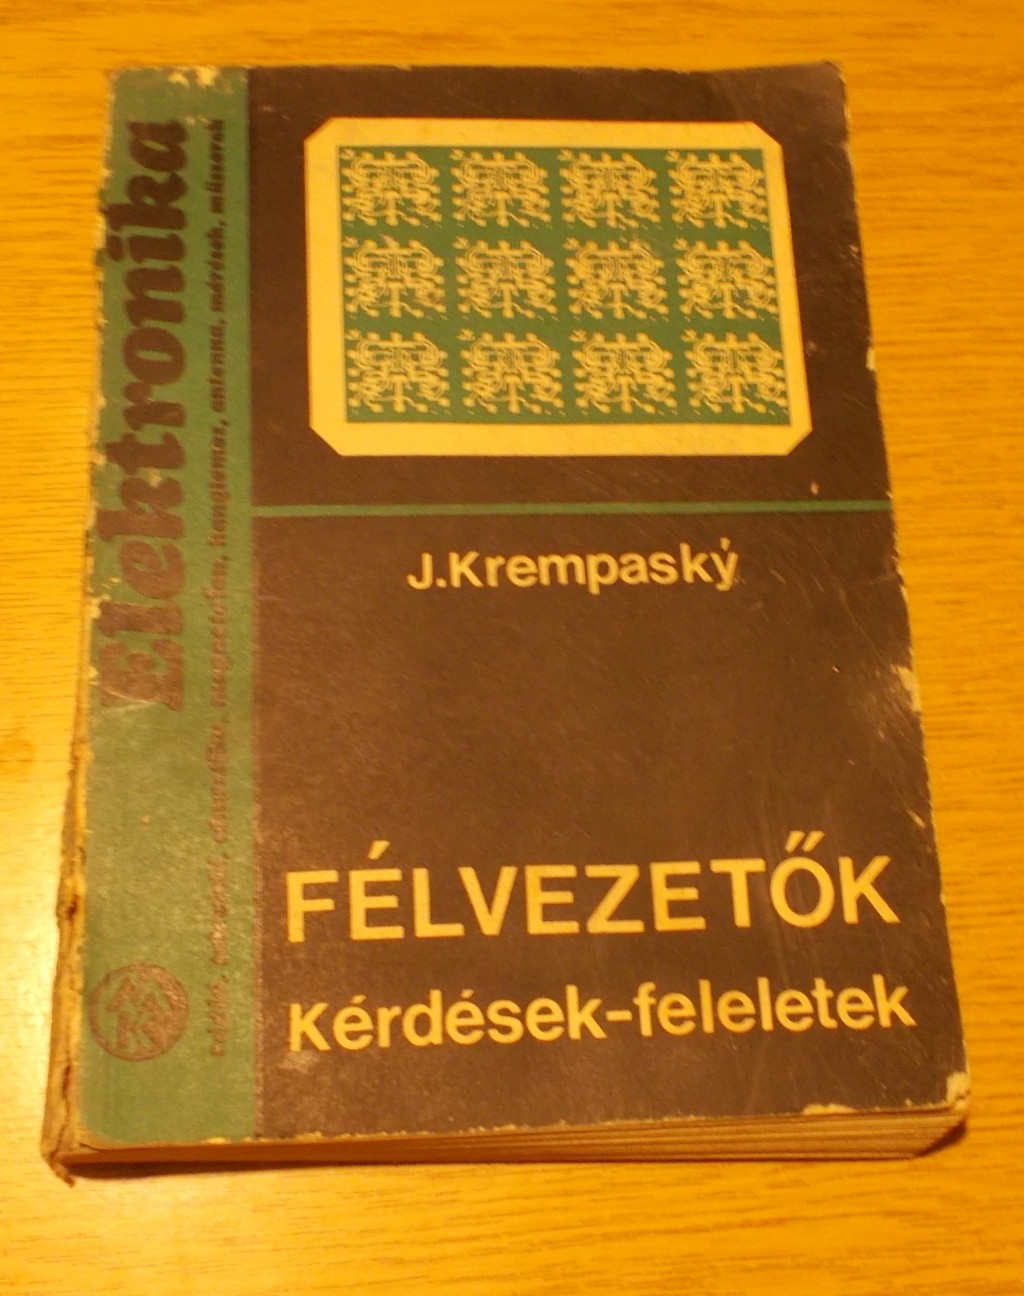 J. Krempasky Félvezetők Kérdések-feleletek

A borító elég rosz állapotú, a könyv olvasható.




